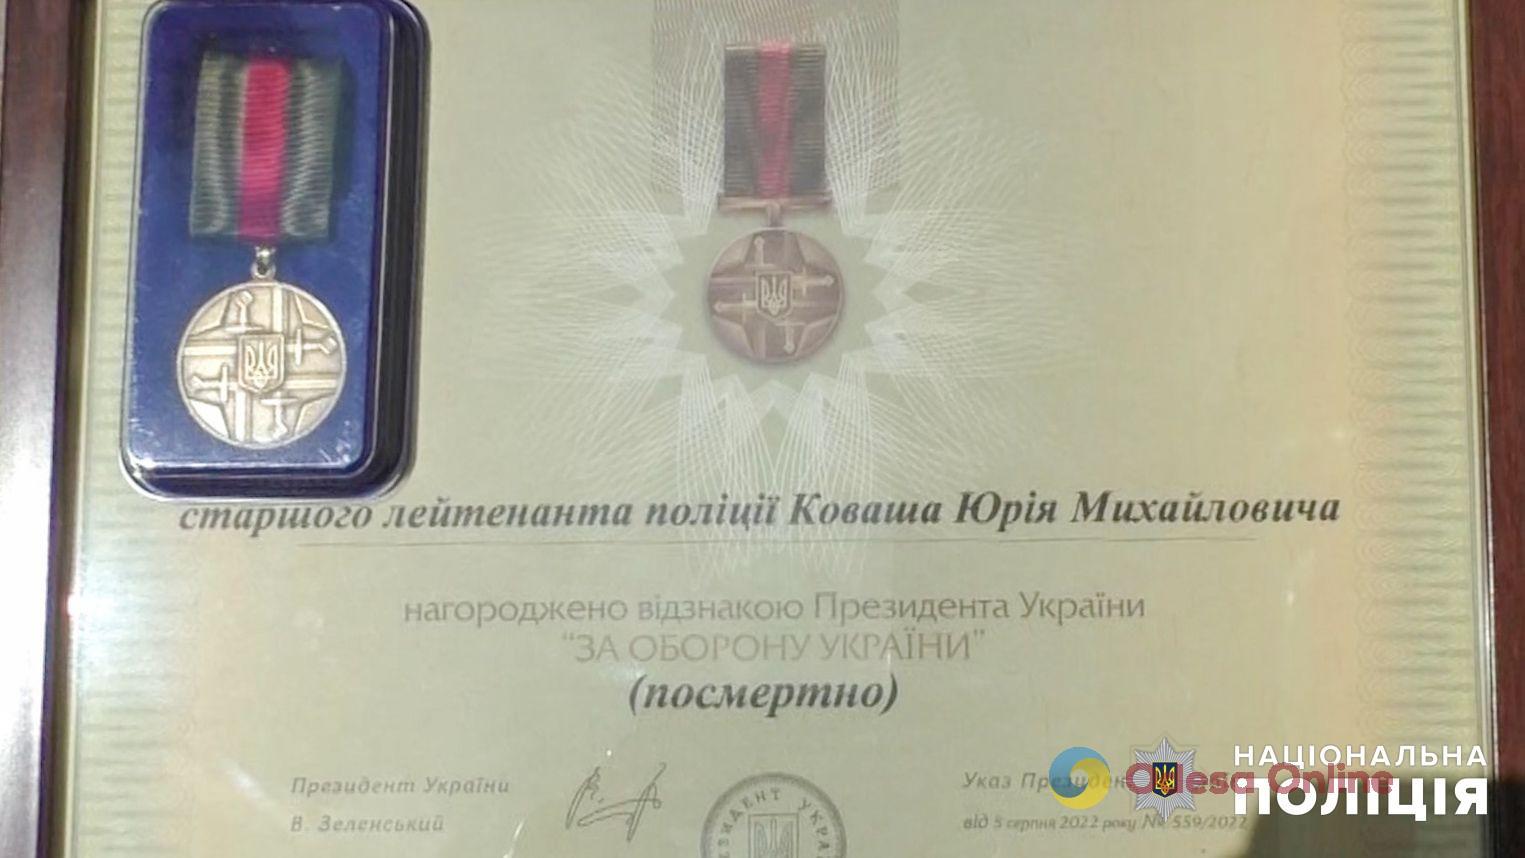 Володимир Зеленський посмертно нагородив поліцейського з Одещини Юрія Коваша, який загинув, захищаючи Україну